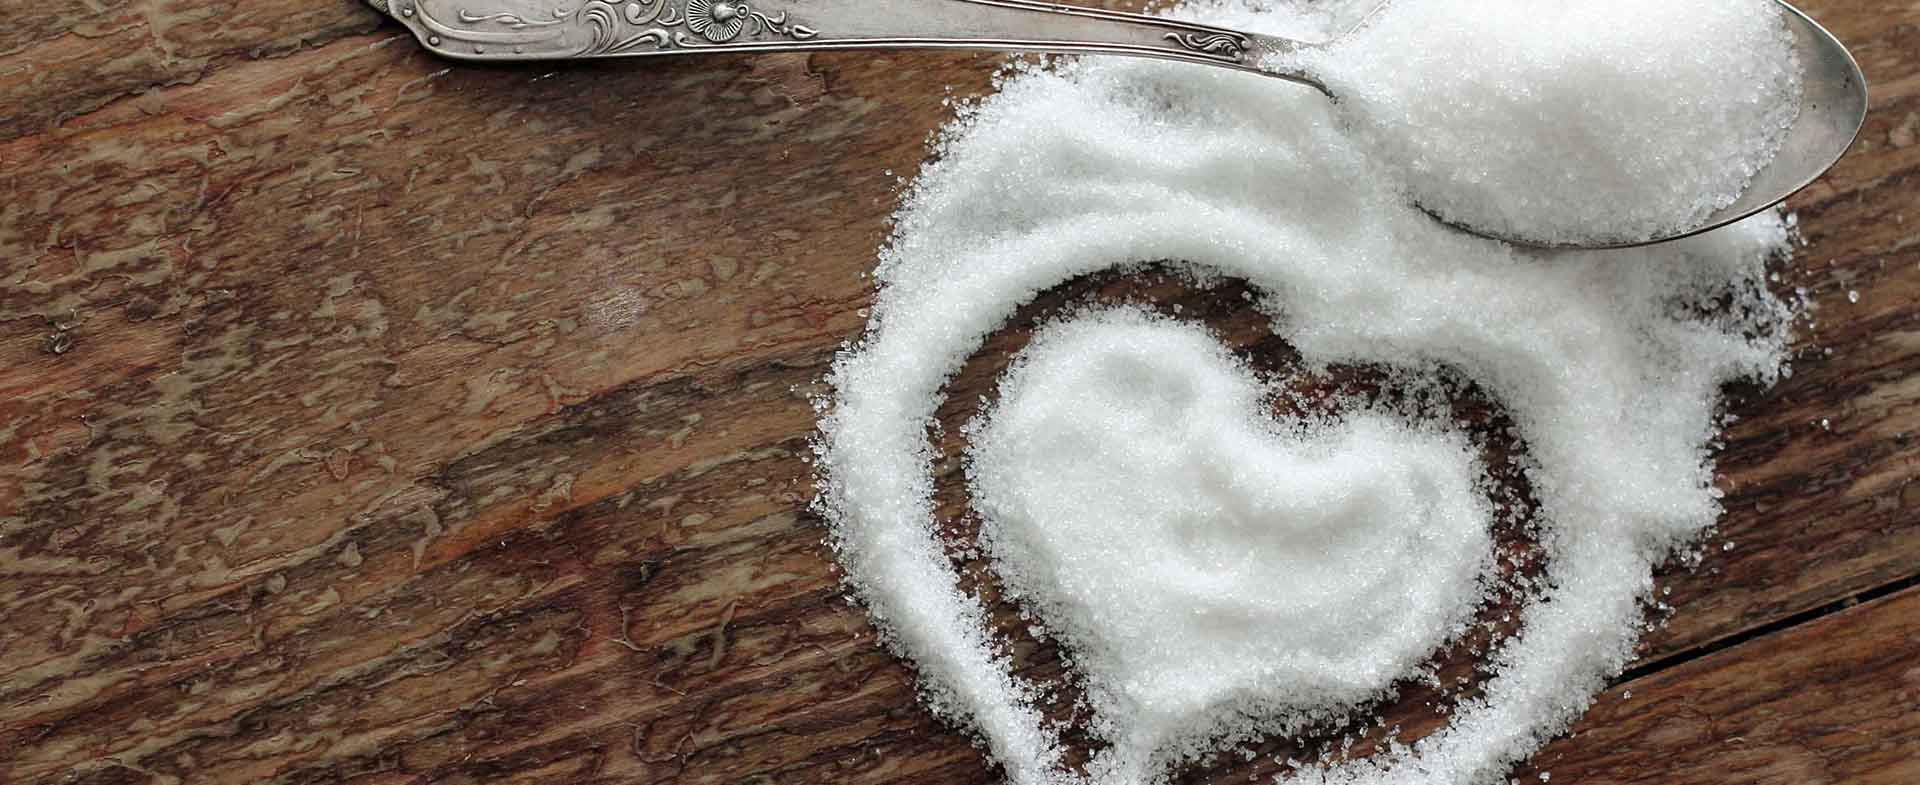 sugar-making-heart-shape